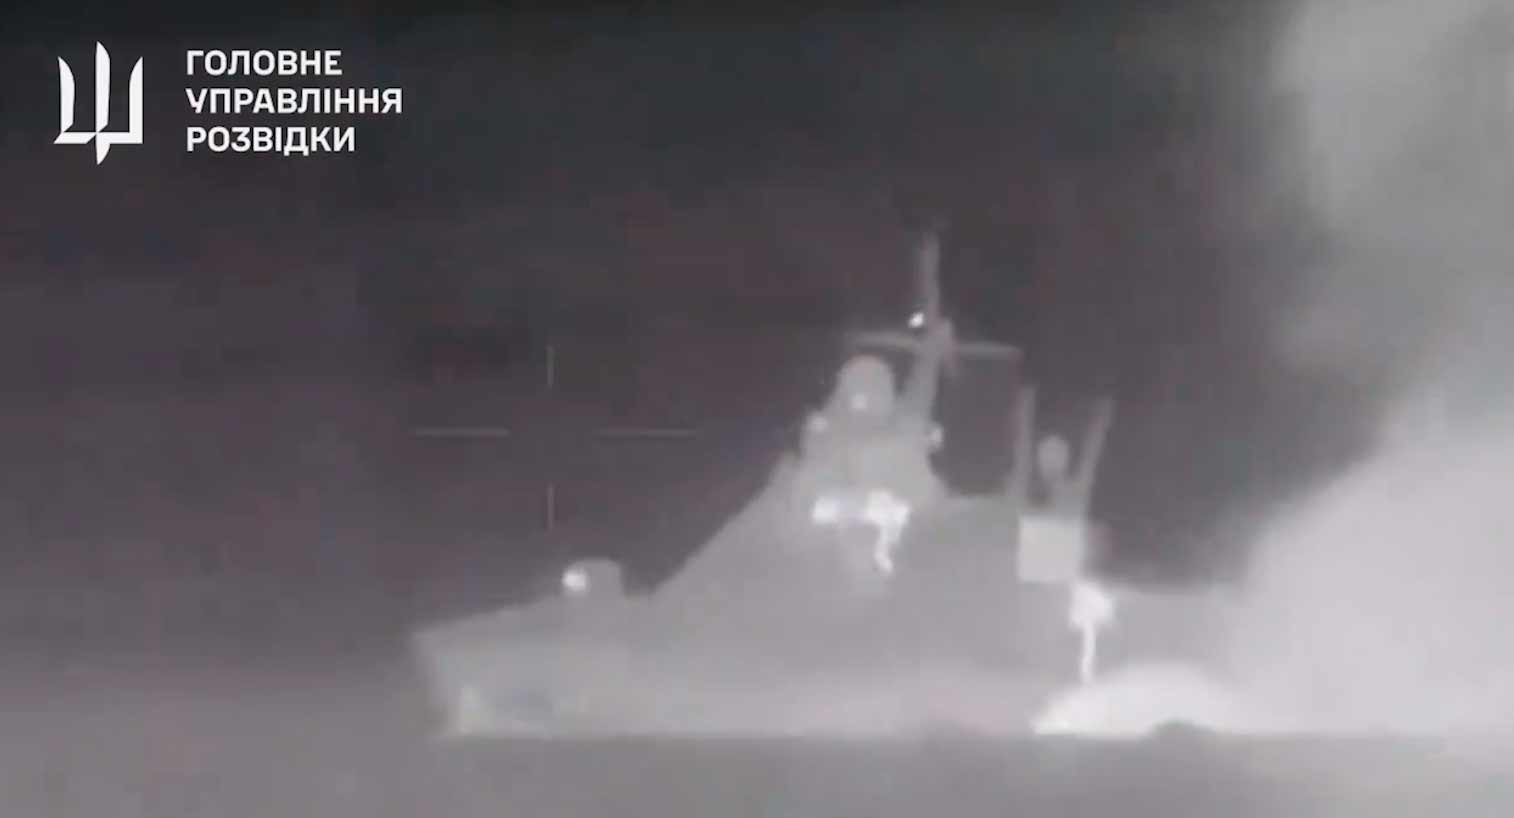 Neues Video zeigt die Explosion, die das russische Schiff Sergey Kotov versenkte. Wiedergabe Twitter @wartranslated